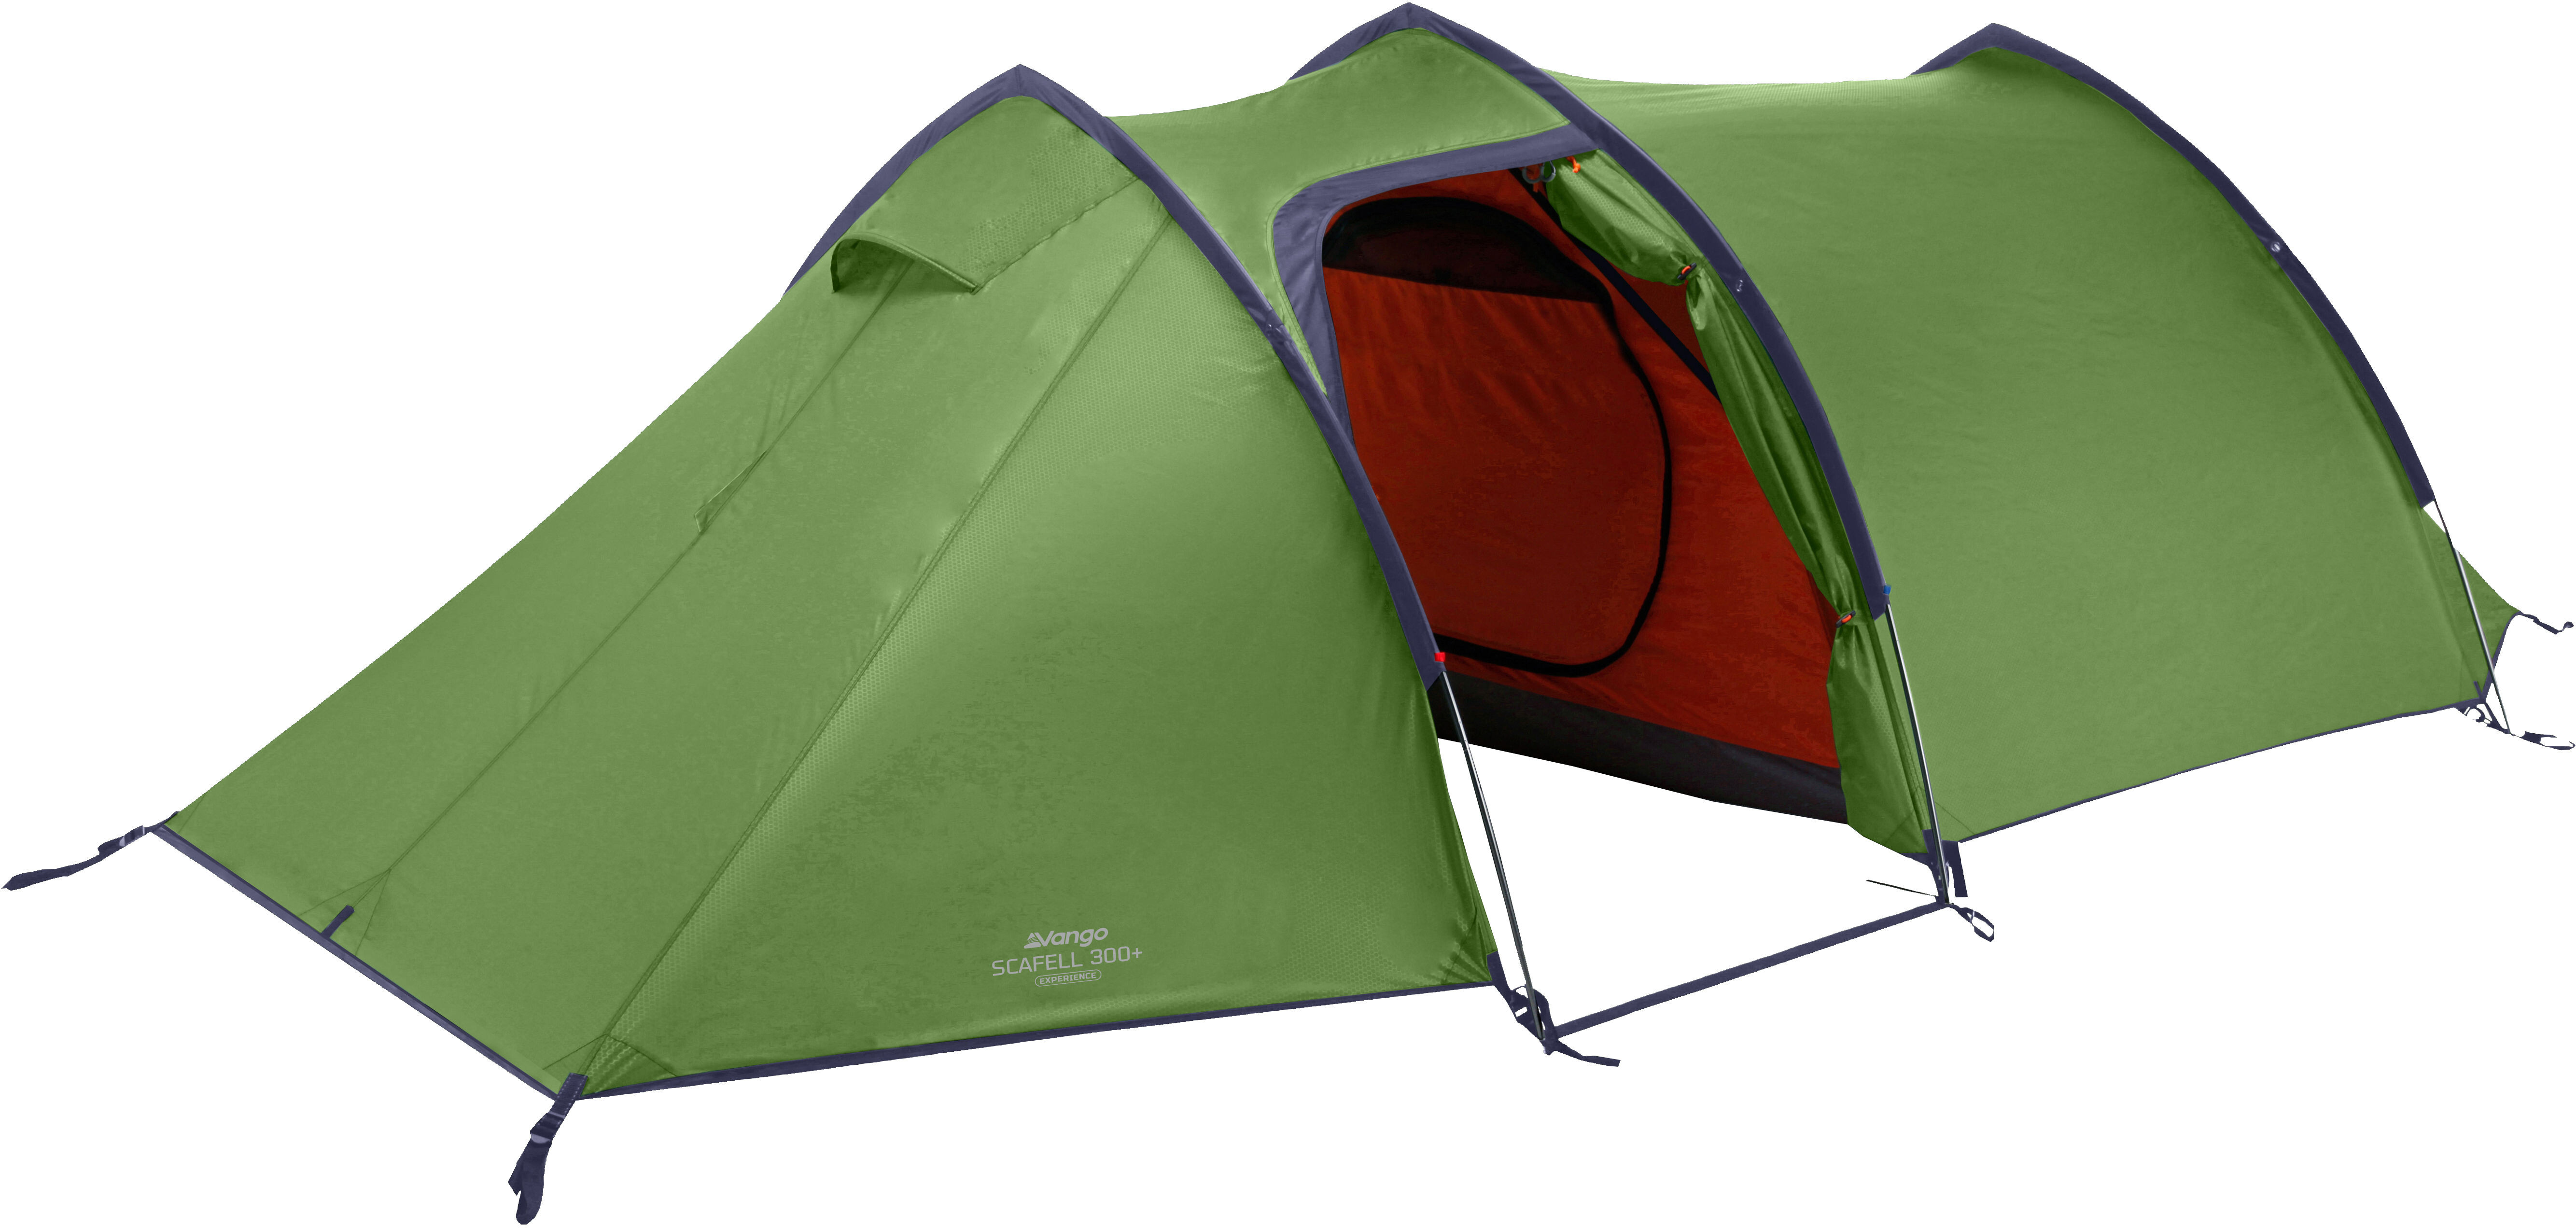 Vango 2 personne chambre Compartiment Cruz Airbeam Tente intérieure tente